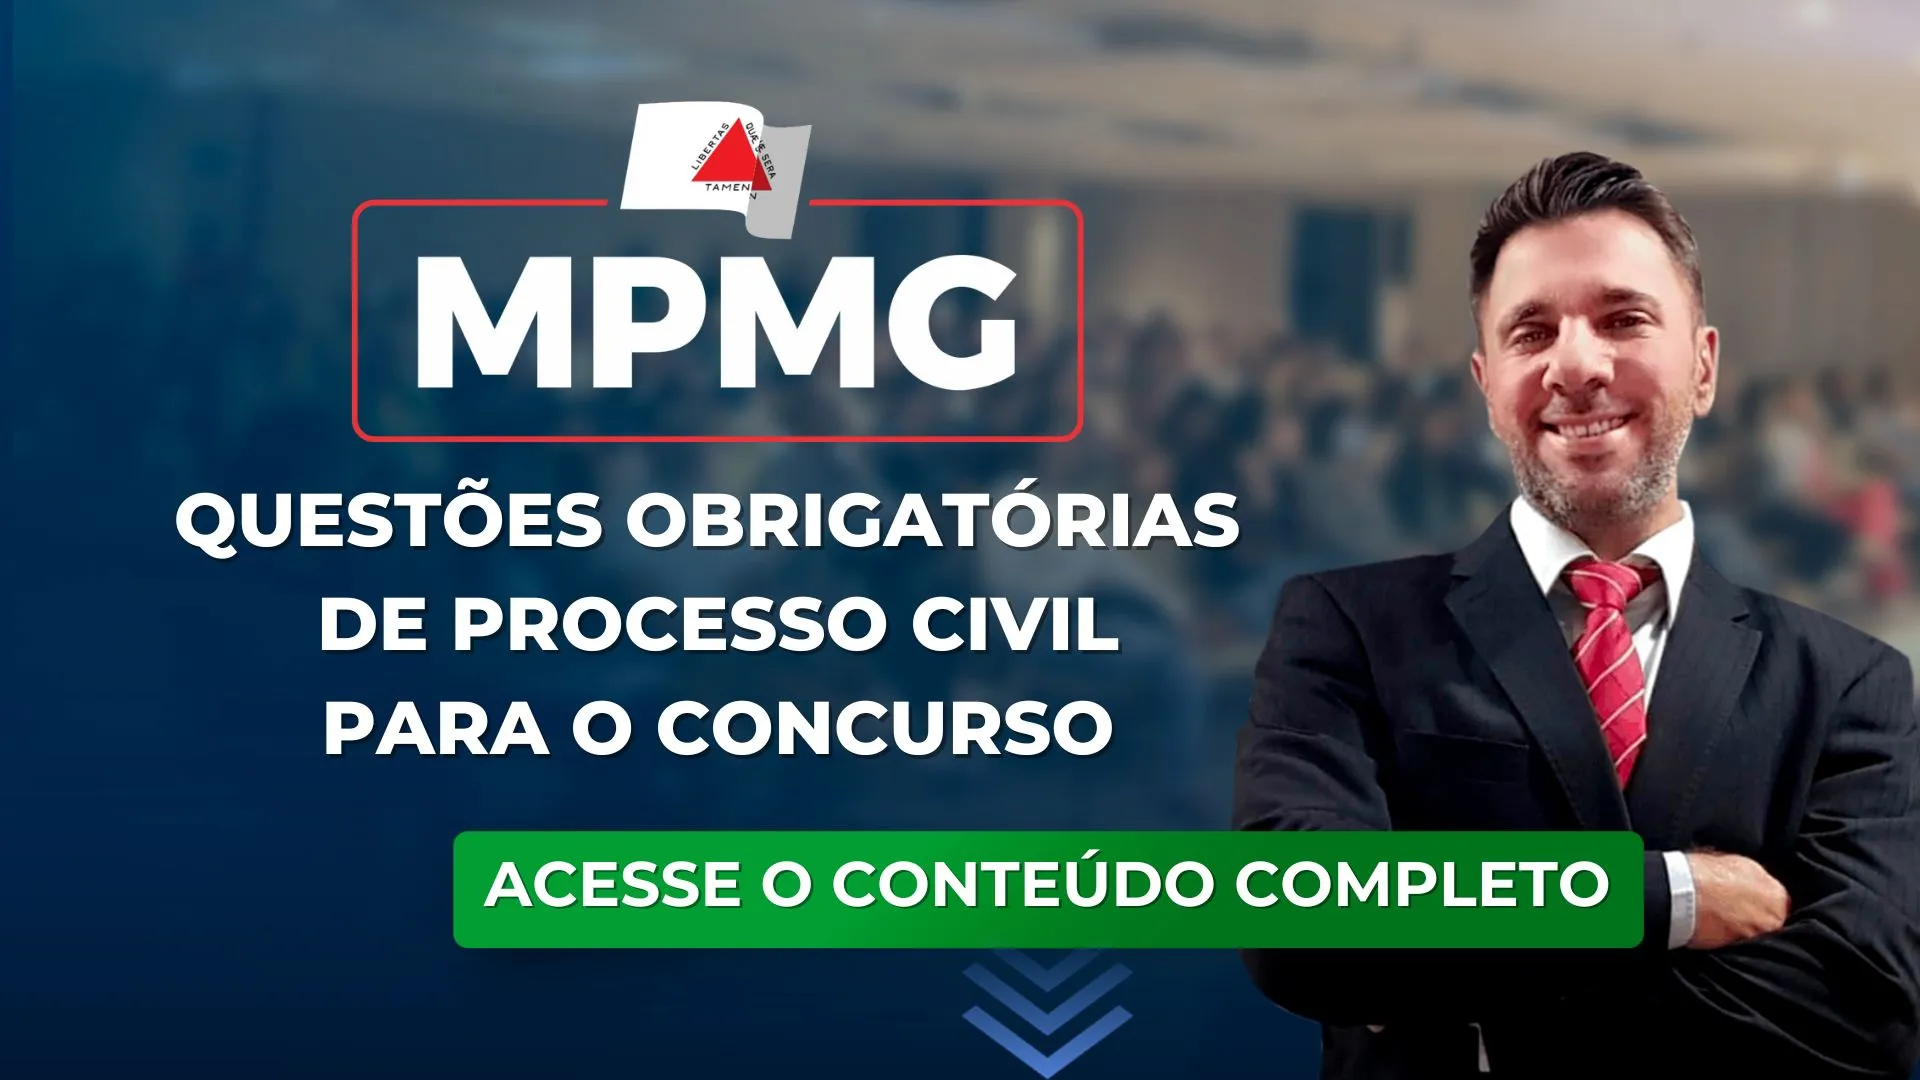 MPMG: Questões obrigatórias de Processo Civil para o concurso